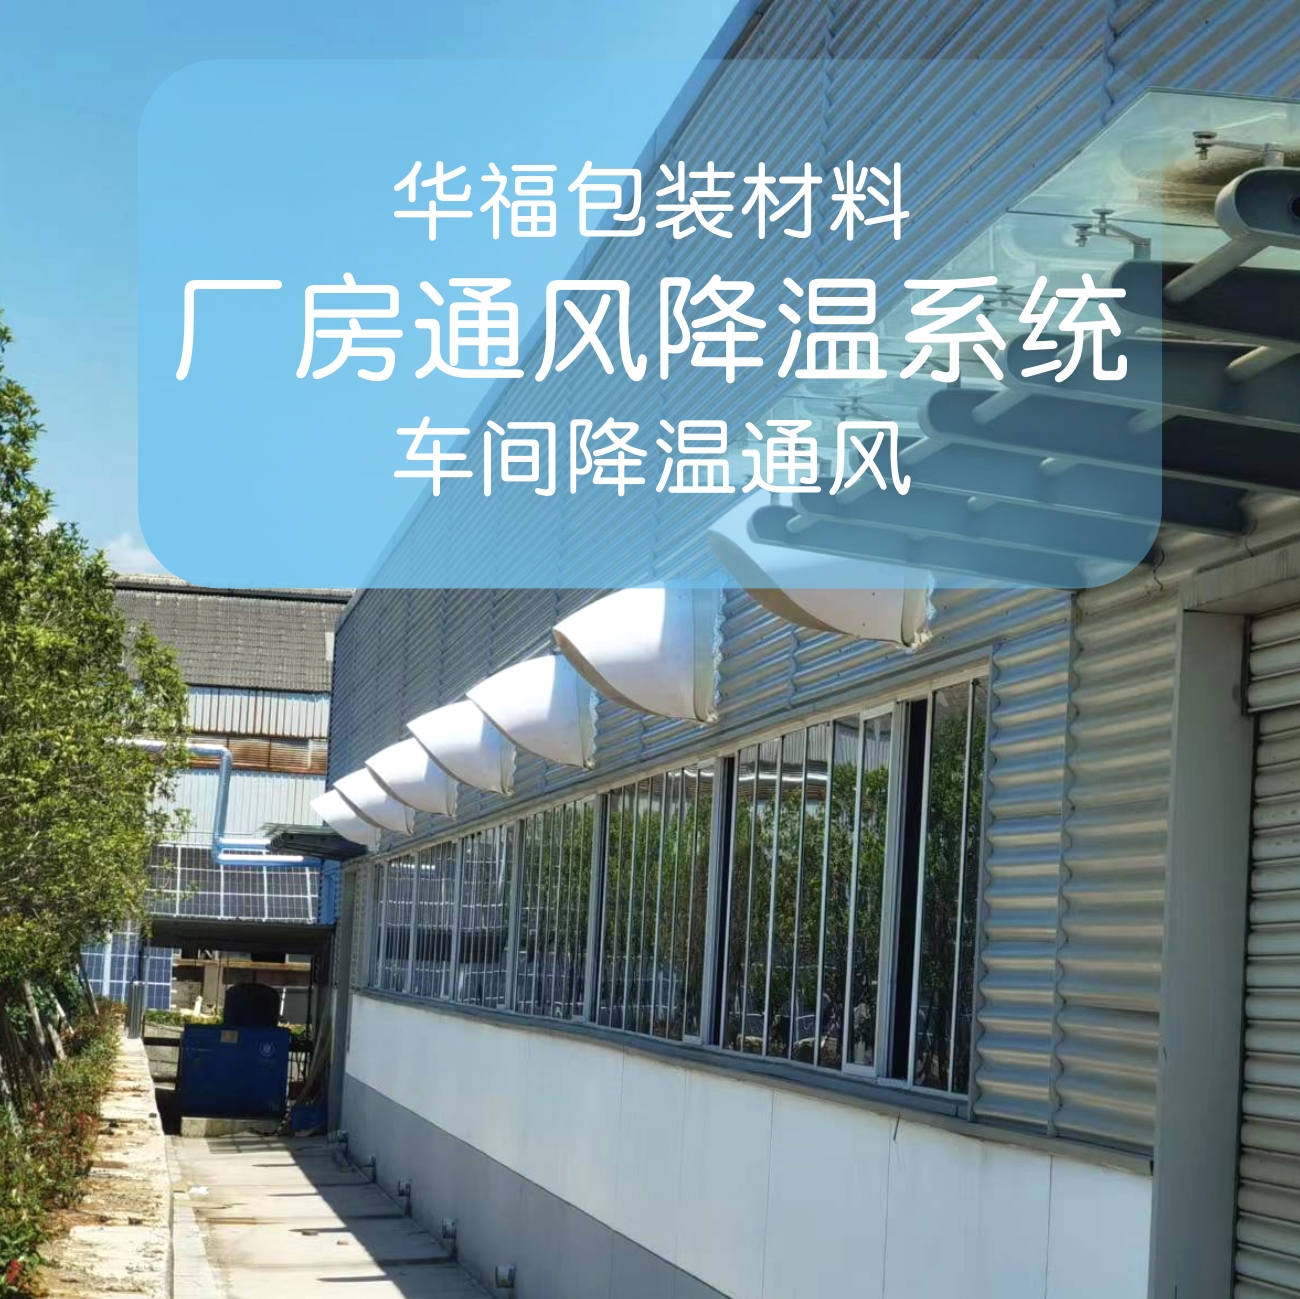 河南華福包裝科技股份有限公司 車間降溫通風系統